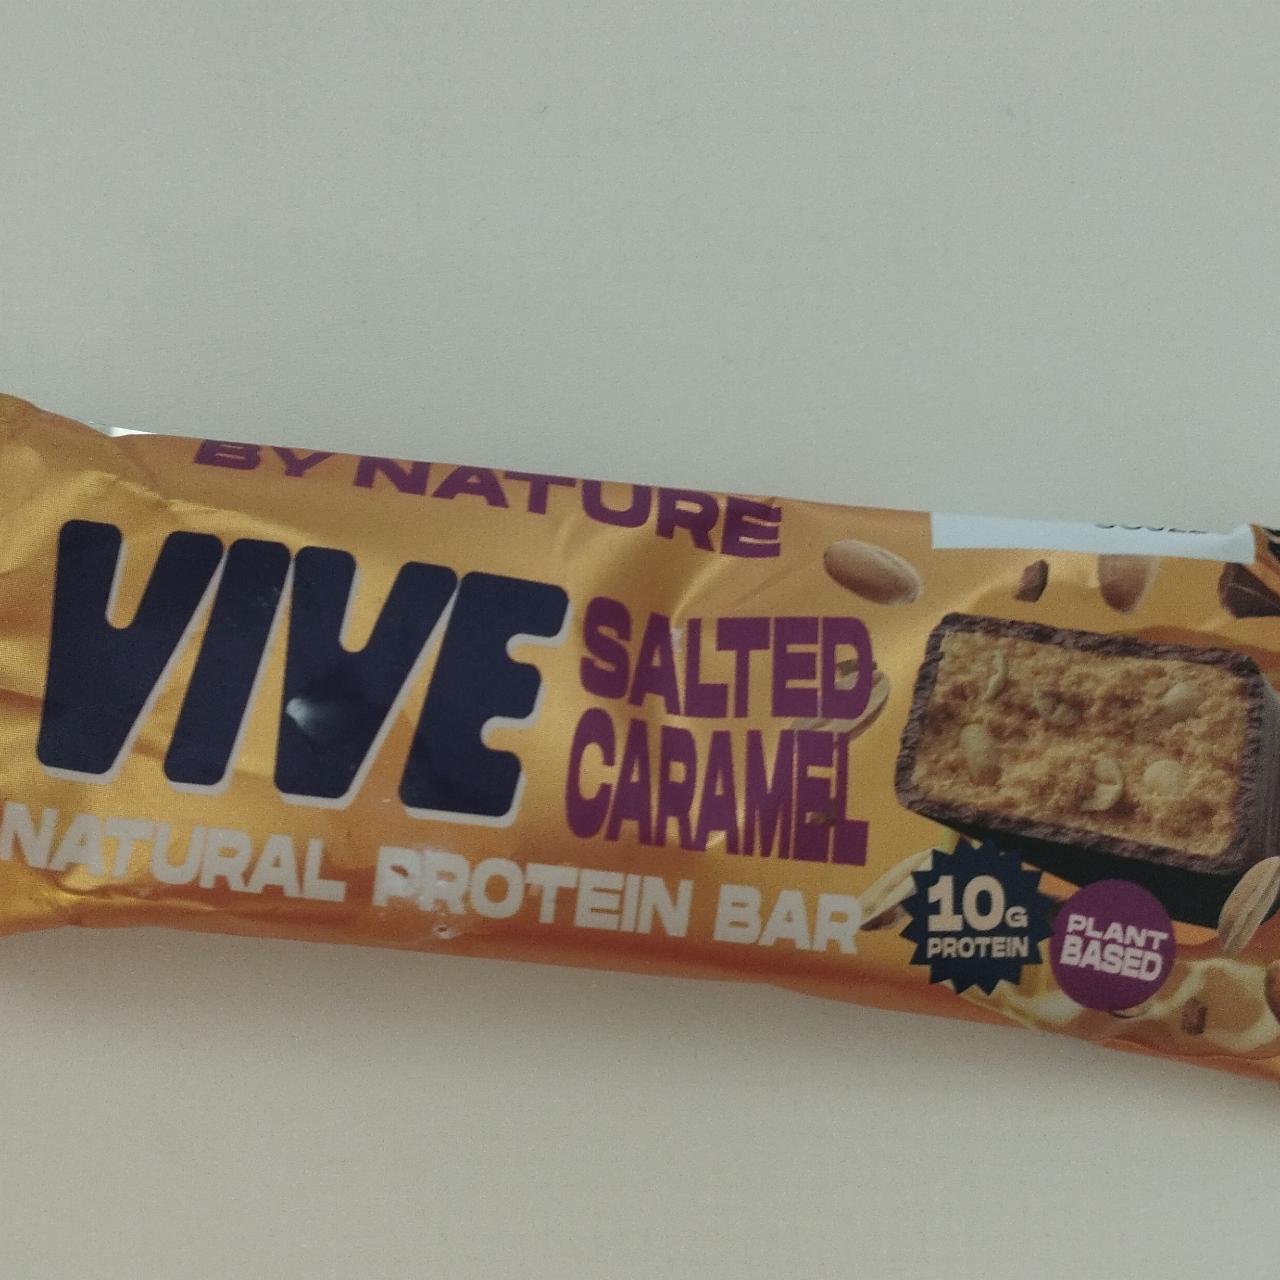 Fotografie - Natural protein bar salted caramel Vive